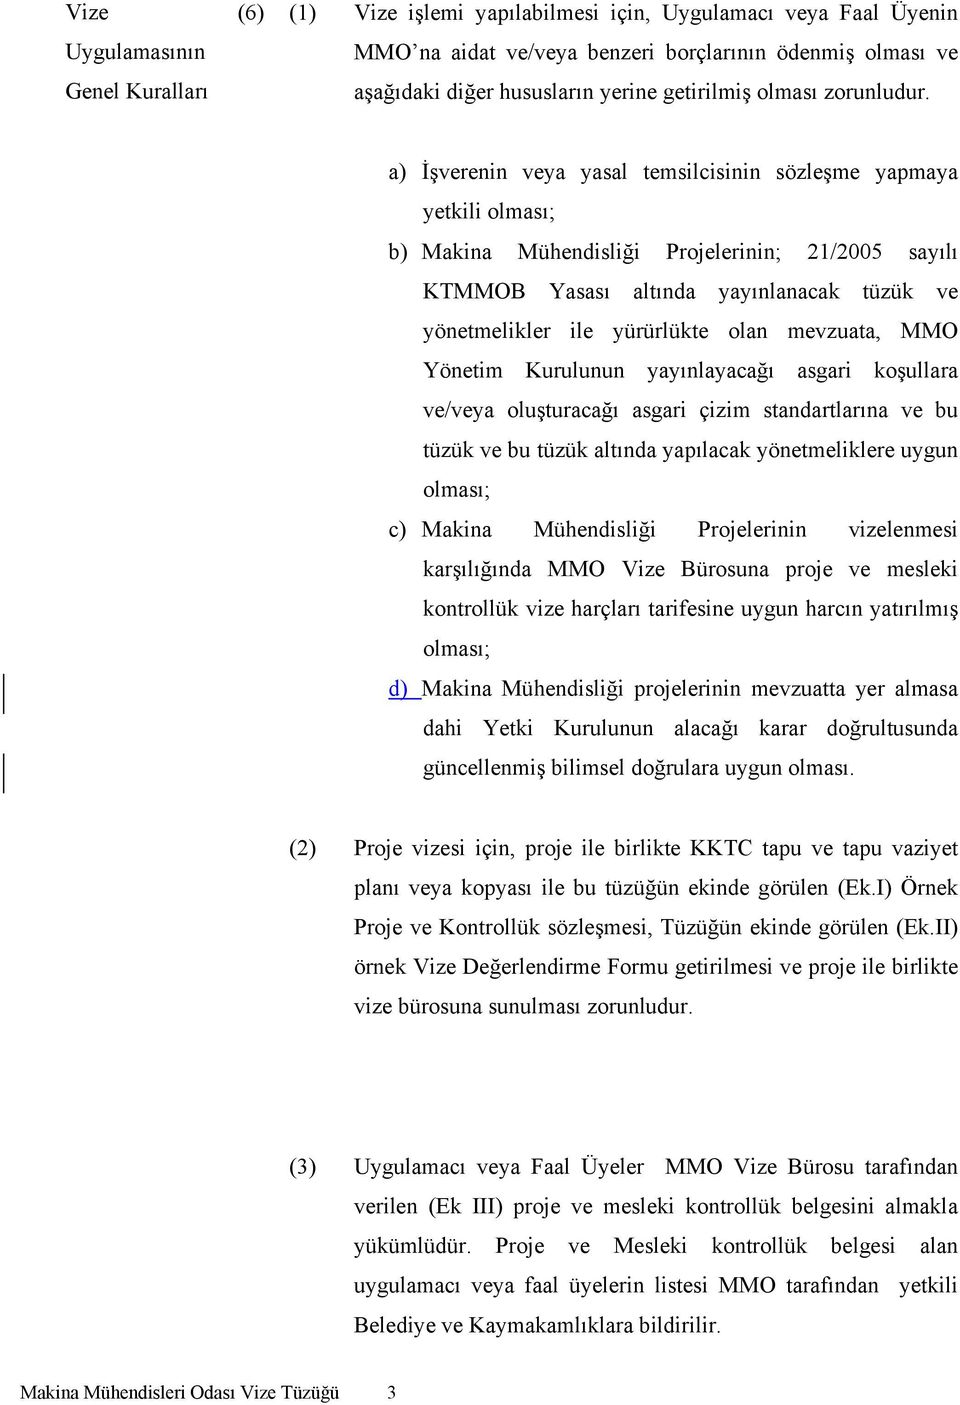 a) İşverenin veya yasal temsilcisinin sözleşme yapmaya yetkili olması; b) Makina Mühendisliği Projelerinin; 21/2005 sayılı KTMMOB Yasası altında yayınlanacak tüzük ve yönetmelikler ile yürürlükte